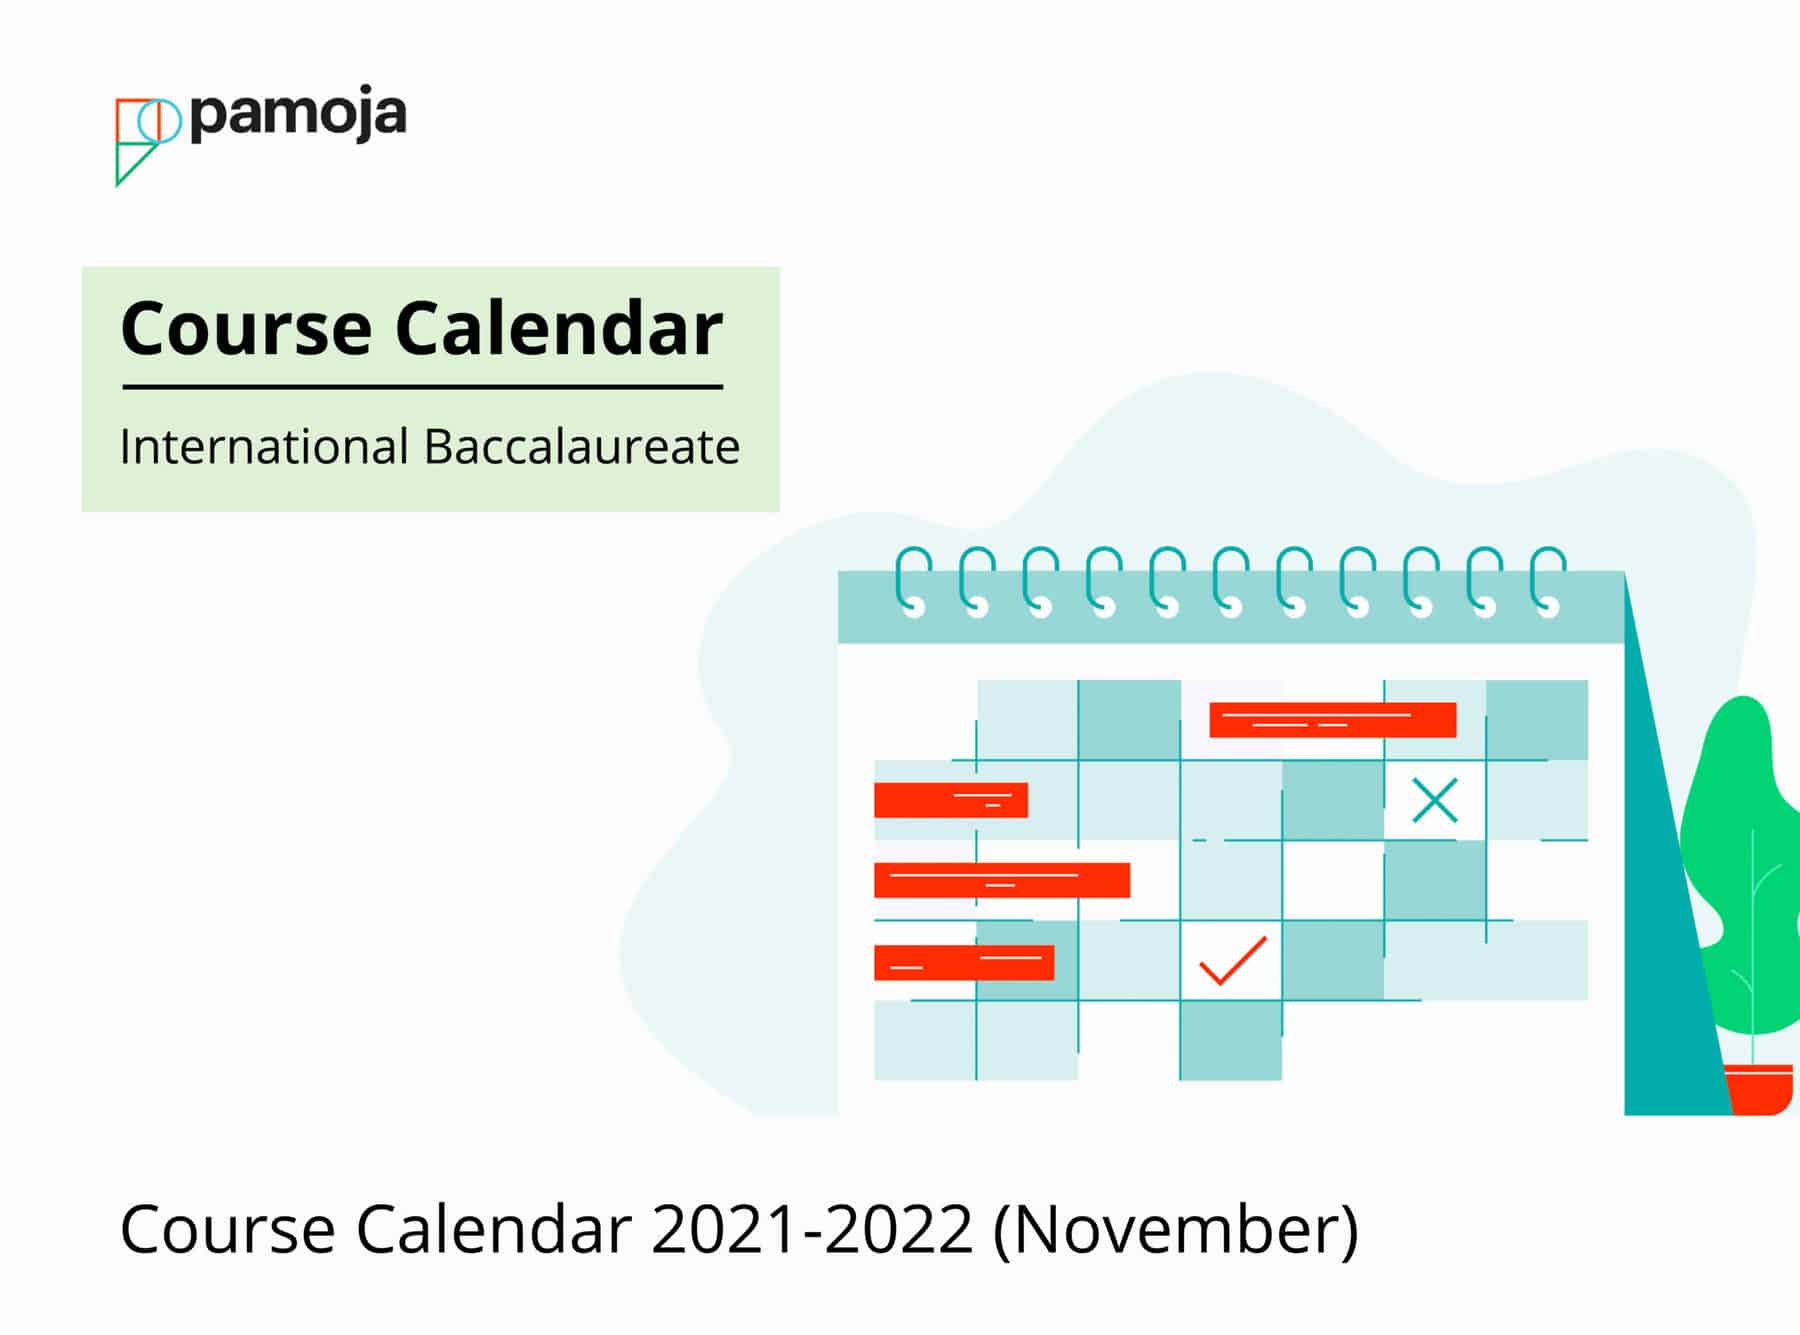 Course Calendar 2021/2022 (Nov)